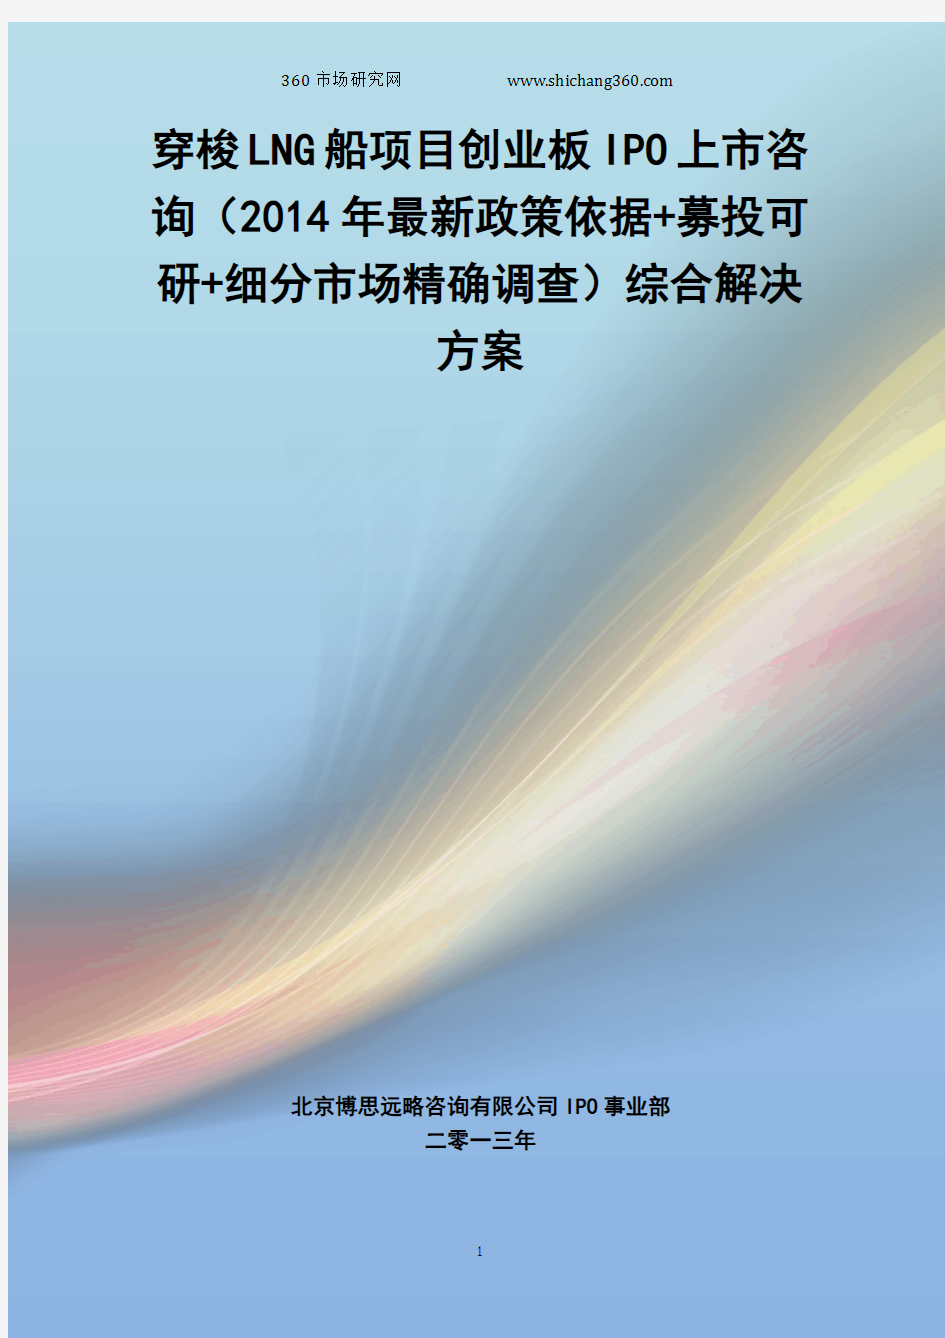 穿梭LNG船IPO上市咨询(2014年最新政策+募投可研+细分市场调查)综合解决方案